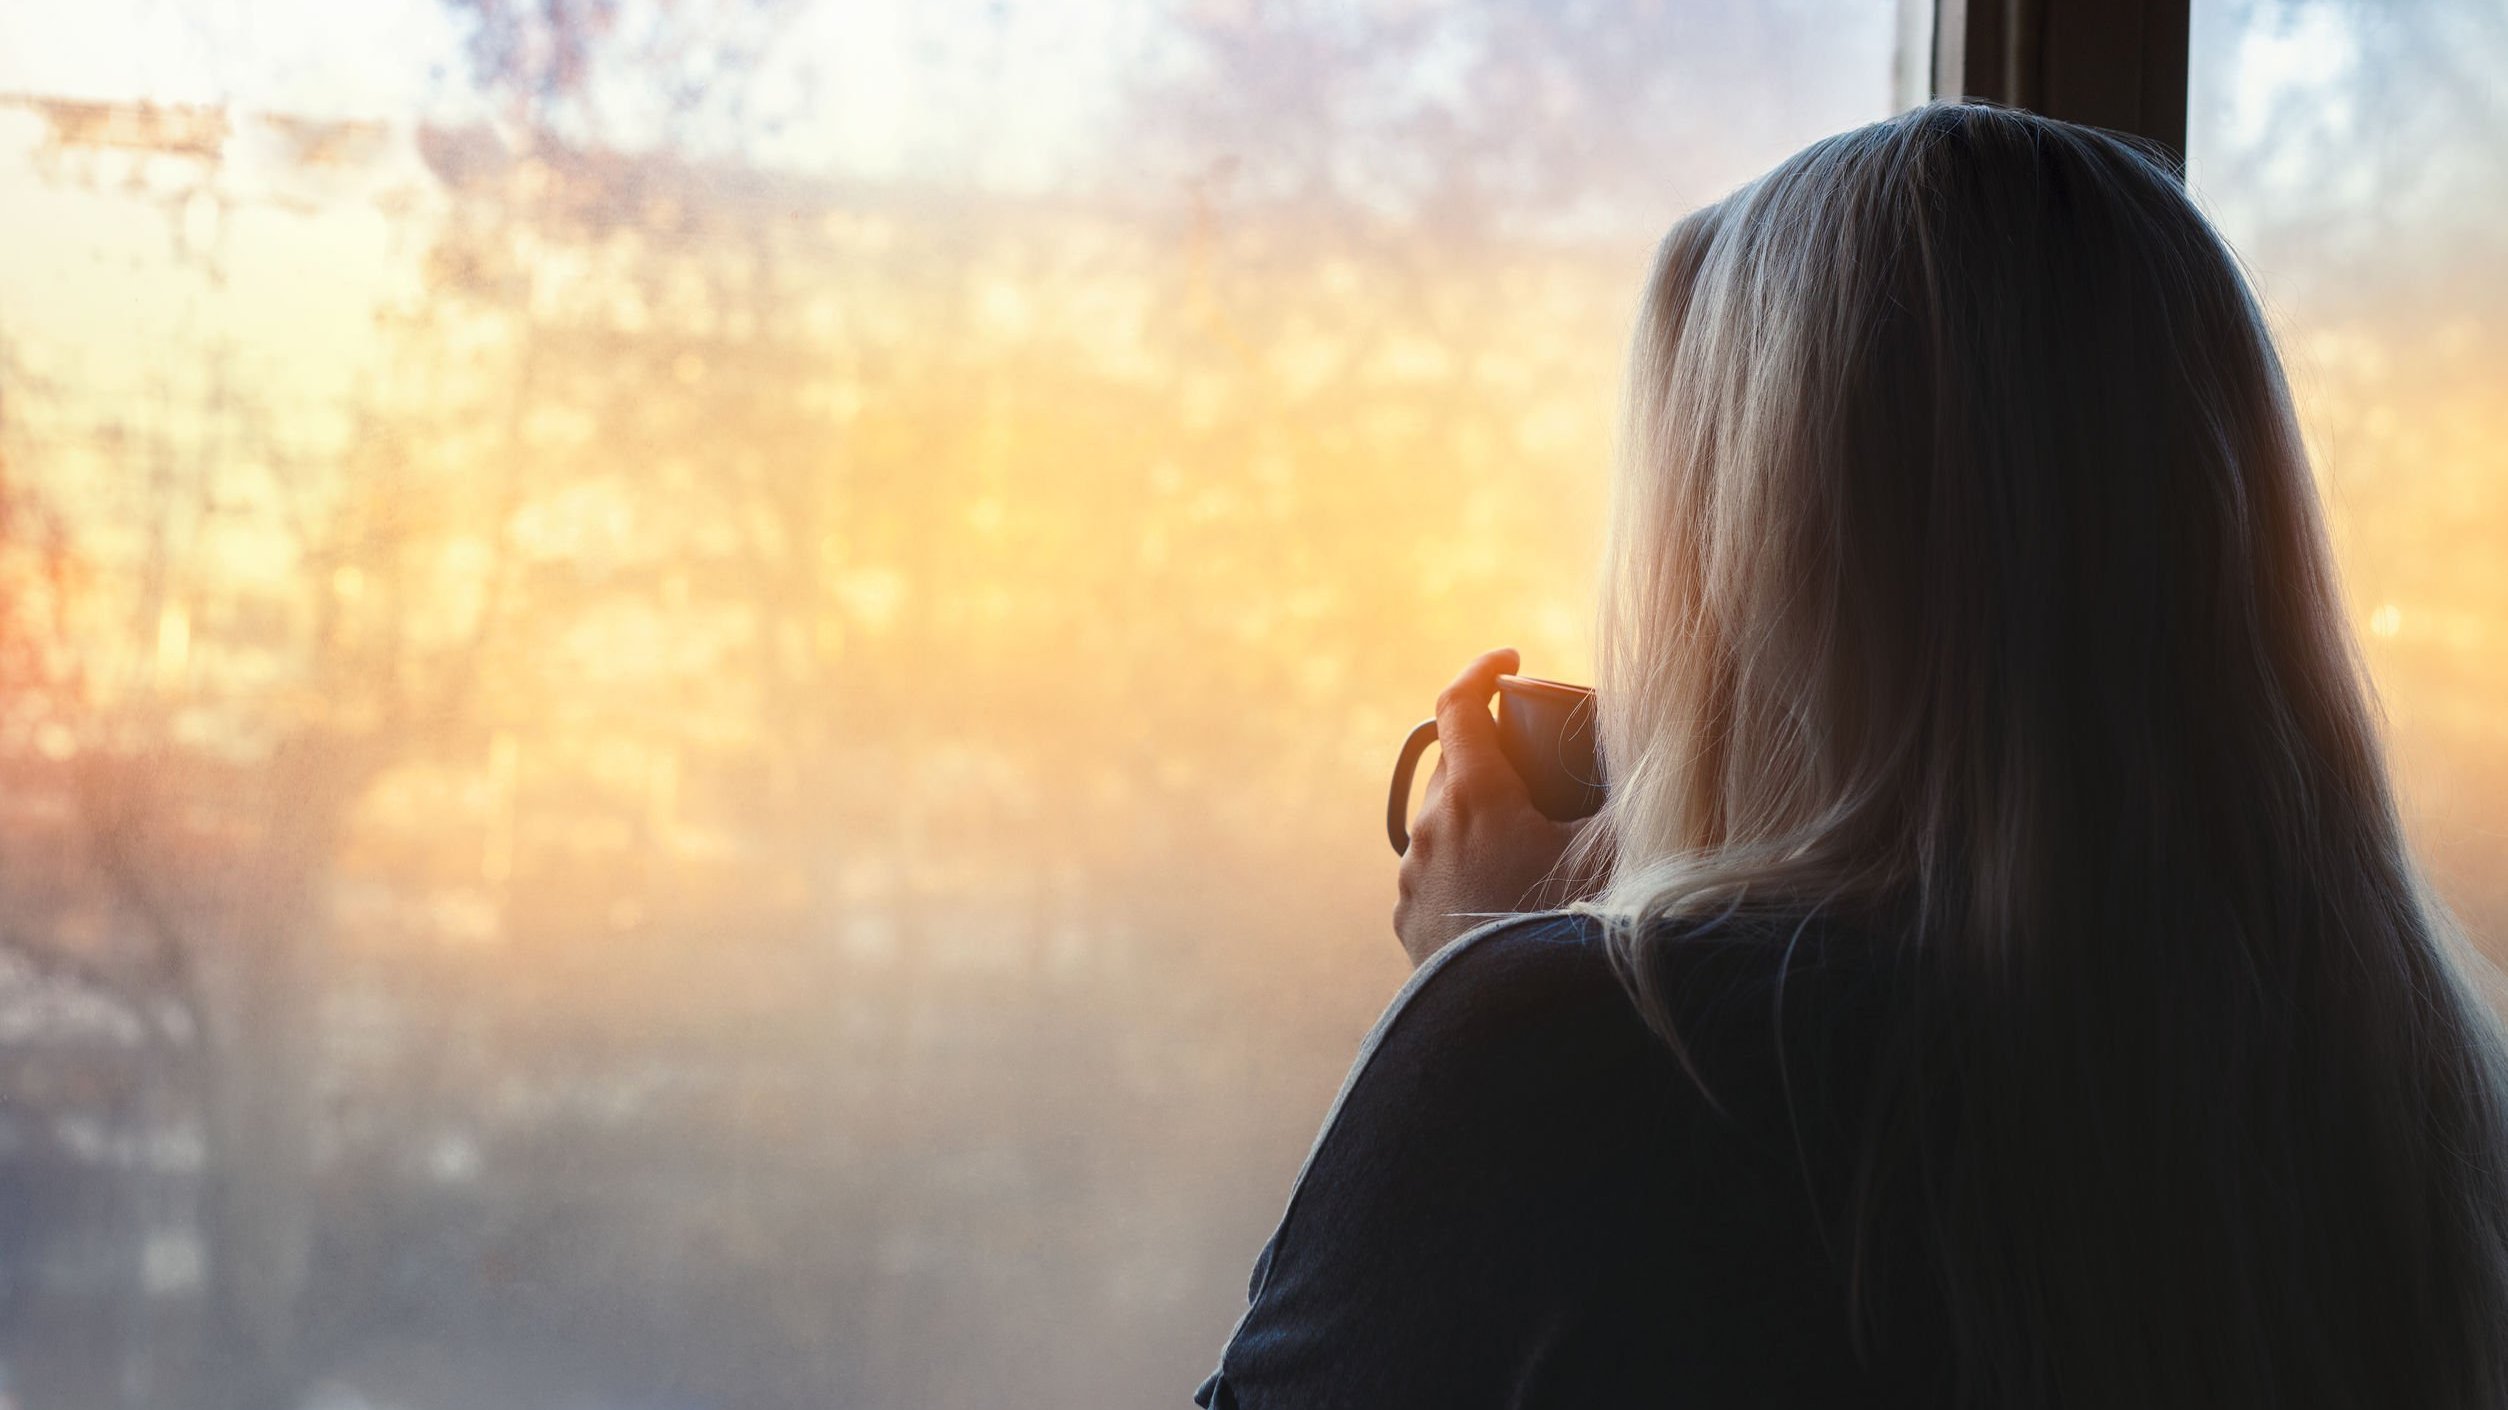 Mulher de costas para a câmera, olhando para uma janela que mostra árvores e a luz amarela do sol, enquanto segura uma caneca.